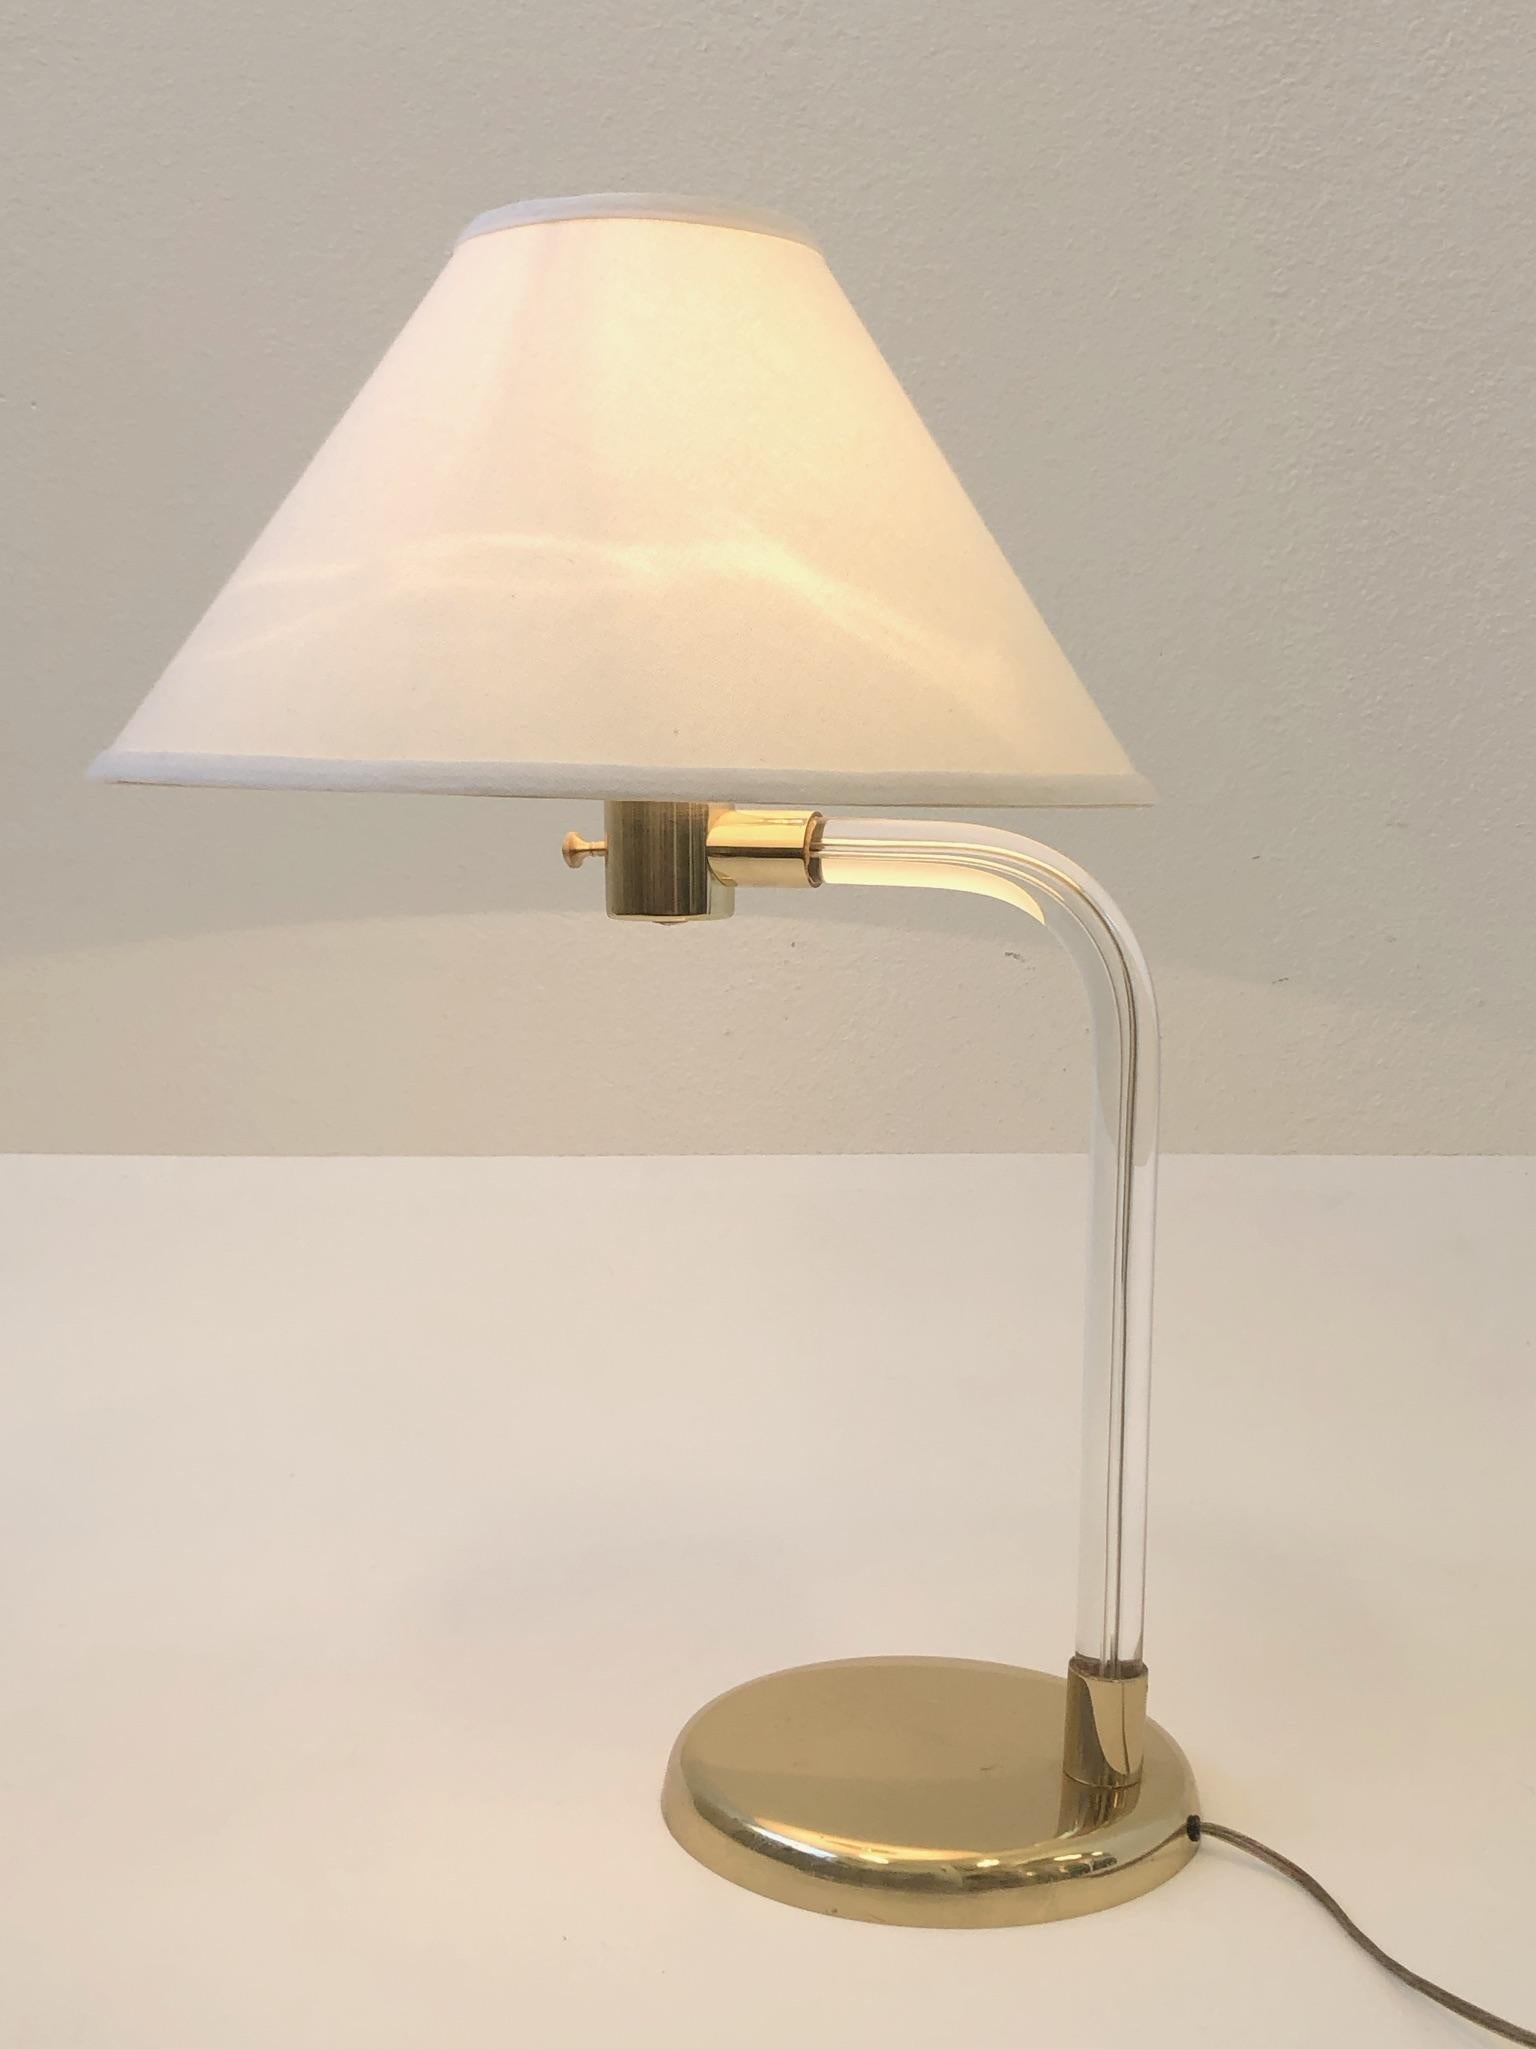 Eine glamouröse Tischleuchte aus poliertem Messing und klarem Acryl. Die Leuchte ist Teil der Kollektion Crylicord Lighting, die Peter Hamburger in den 1970er Jahren für Knoll International entworfen hat.
Die Lampe wurde neu verkabelt, der Schirm